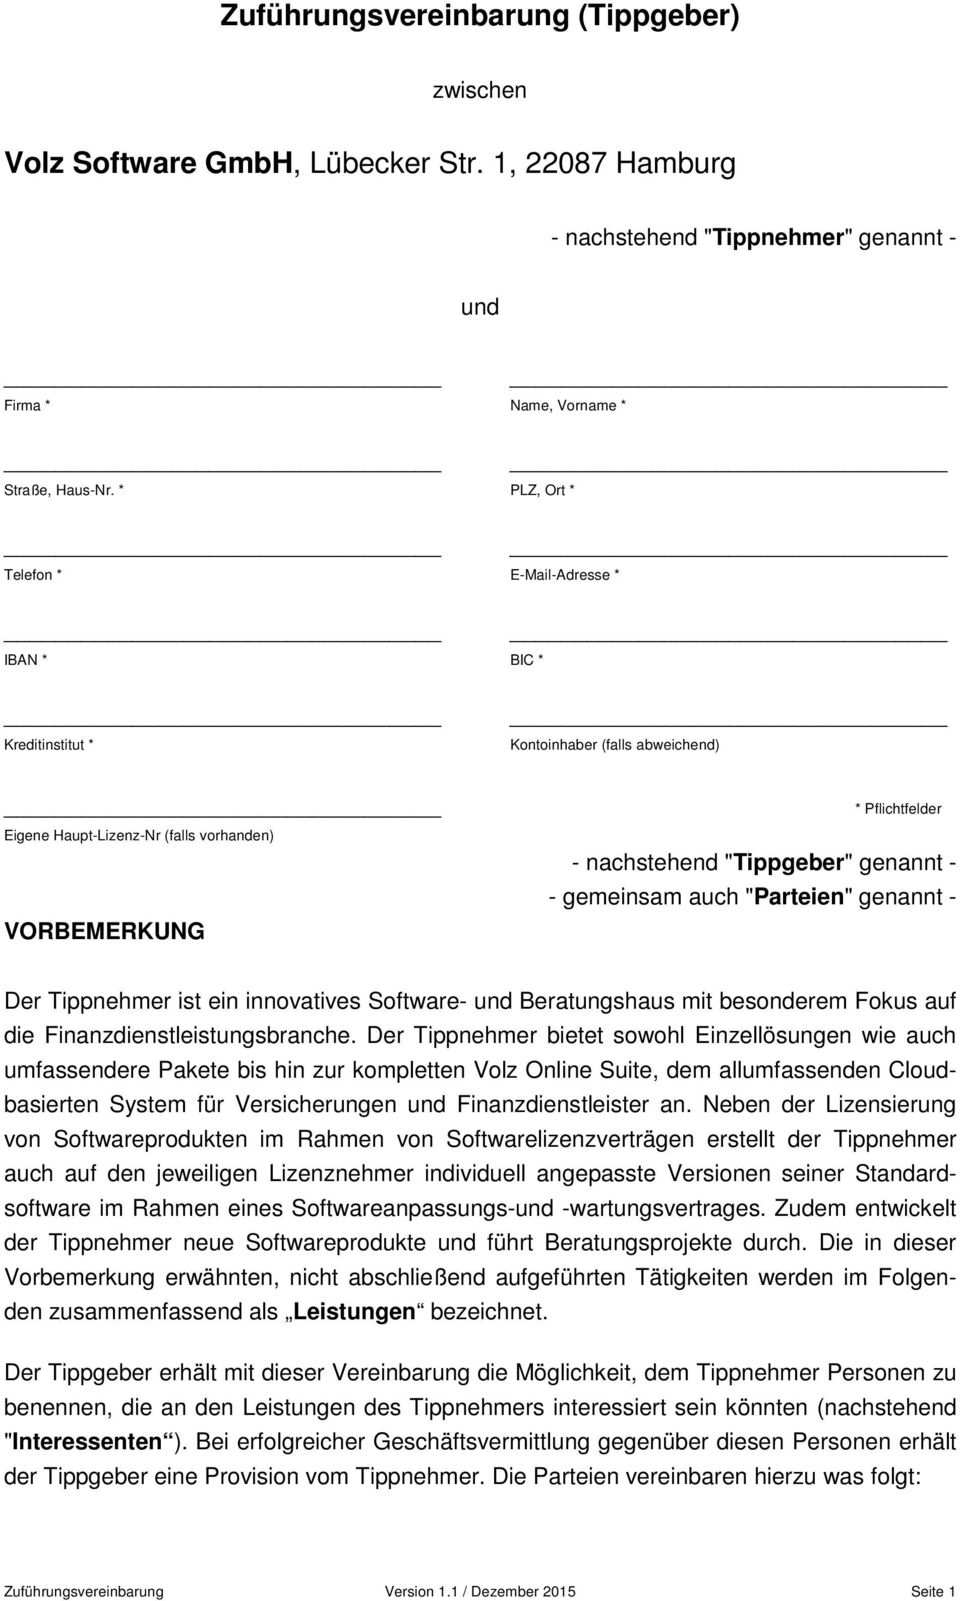 Zufuhrungsvereinbarung Tippgeber Volz Software Gmbh Lubecker